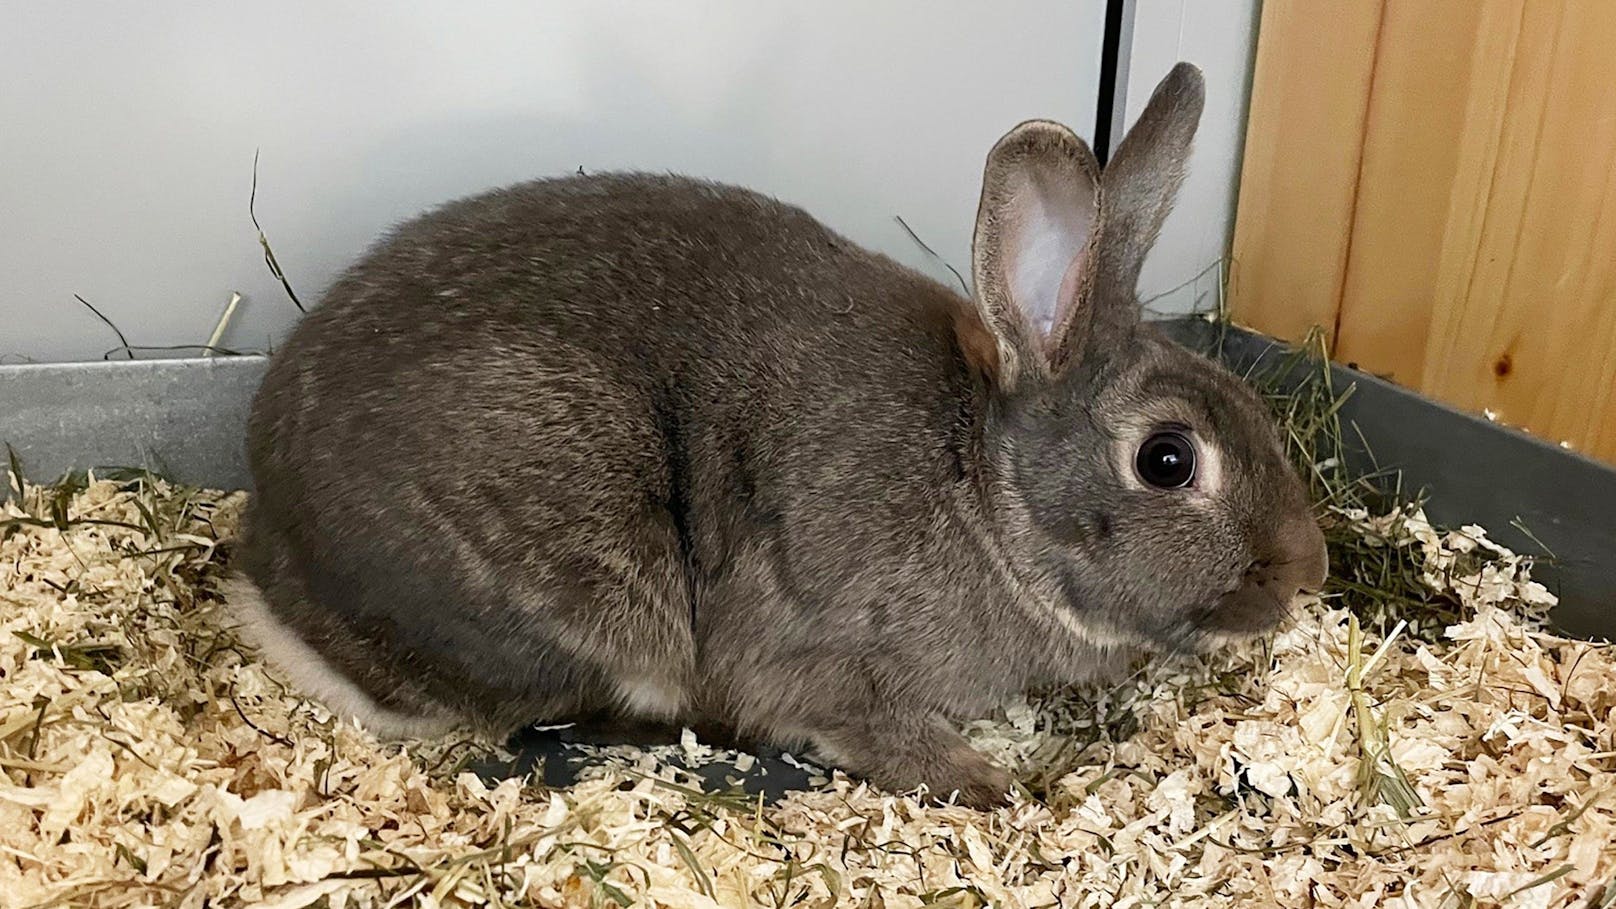 <strong>JUMBO:</strong> Das hübsche Kaninchen Jumbo (9 Monate) wurde freilaufend in einer Parkanlage gefunden und in Sicherheit gebracht.